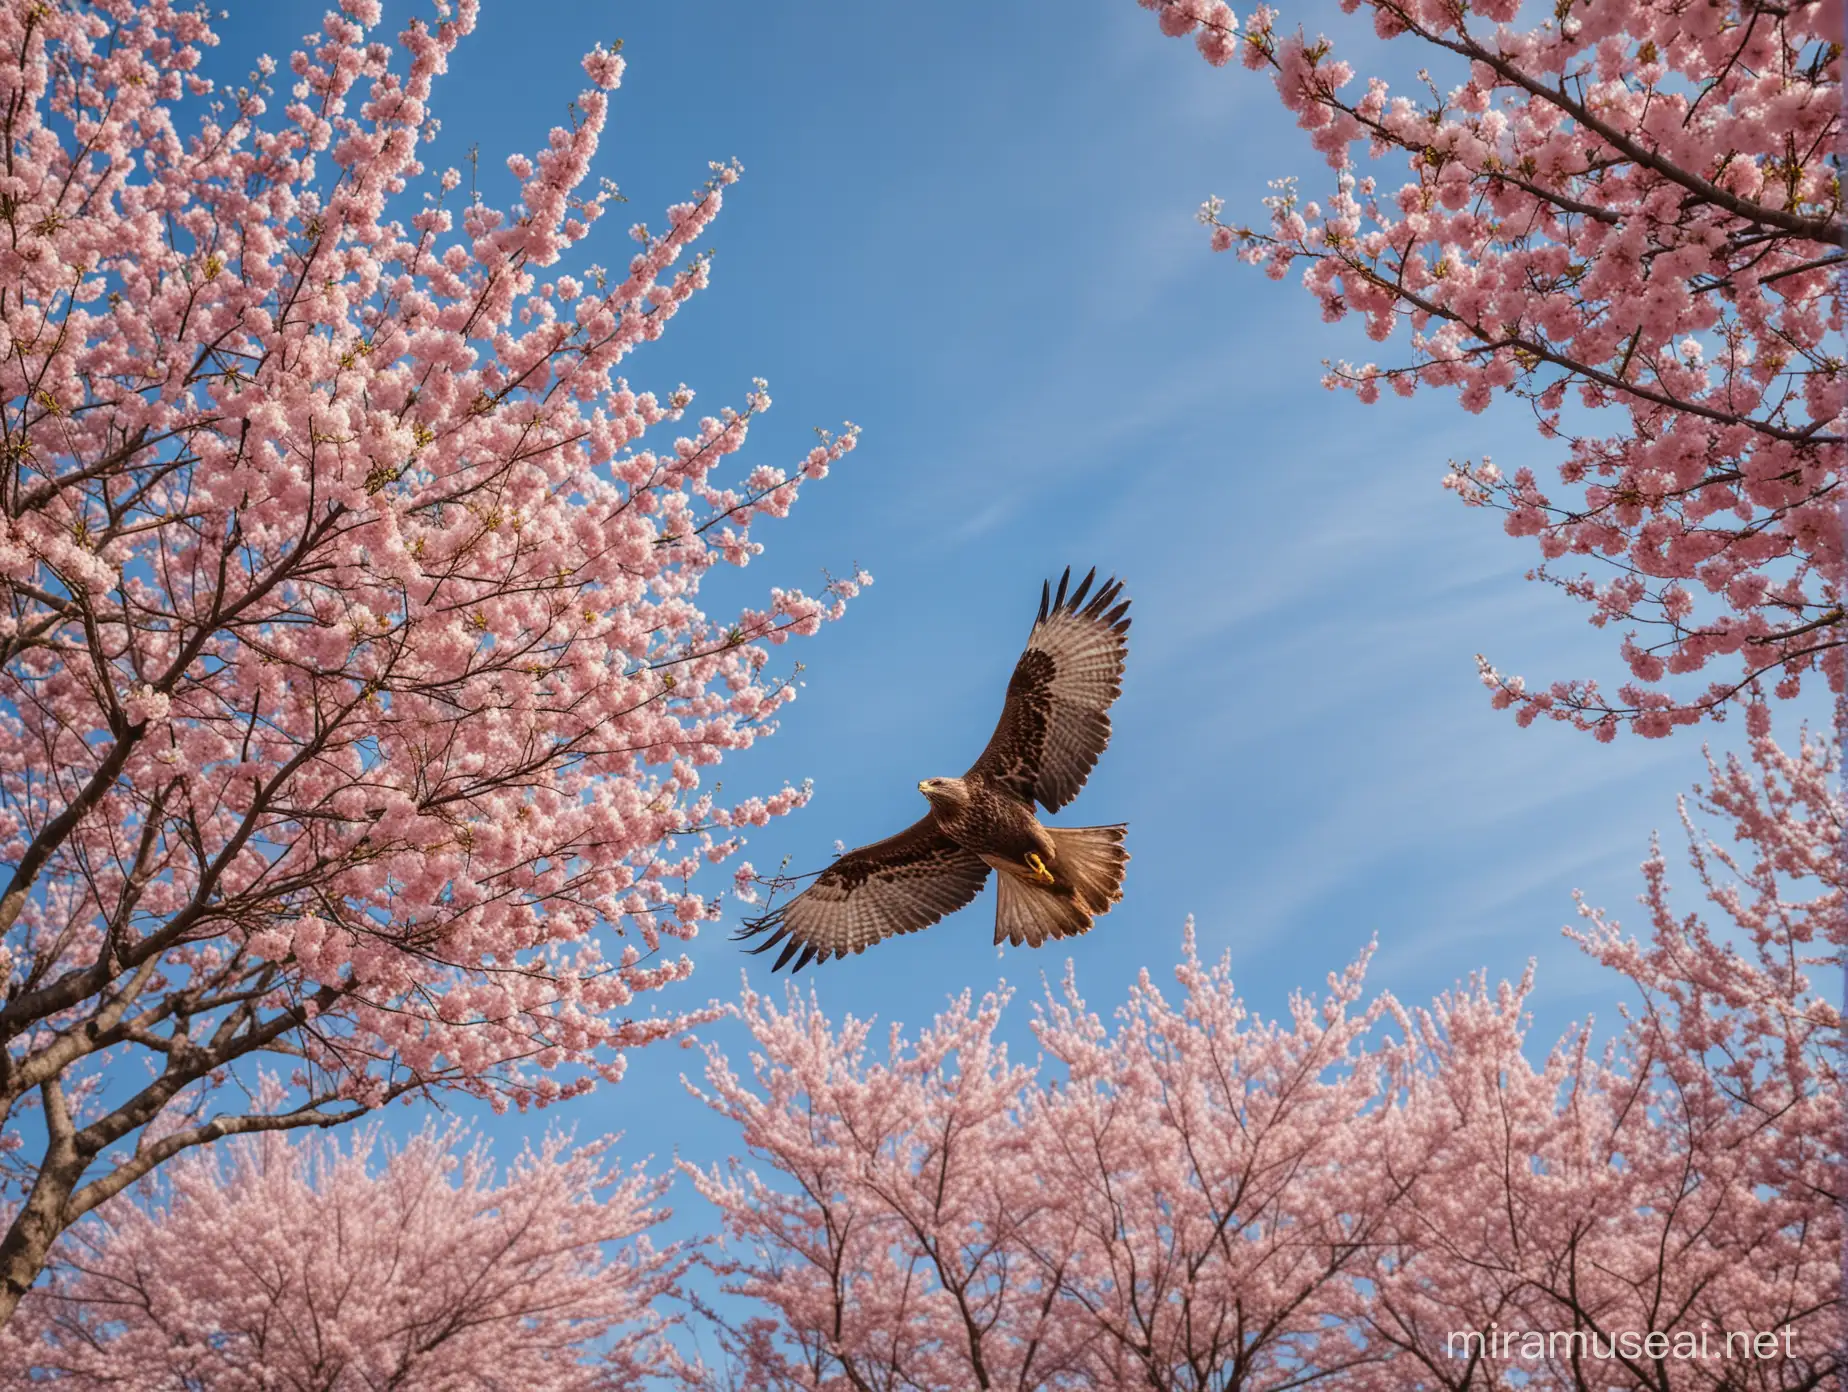 Ein Bussard mit gespreizten Flügeln fliegt über einen blühenden Kirschblütenbaum, wide angle, helle Farben, blühende Stimmung